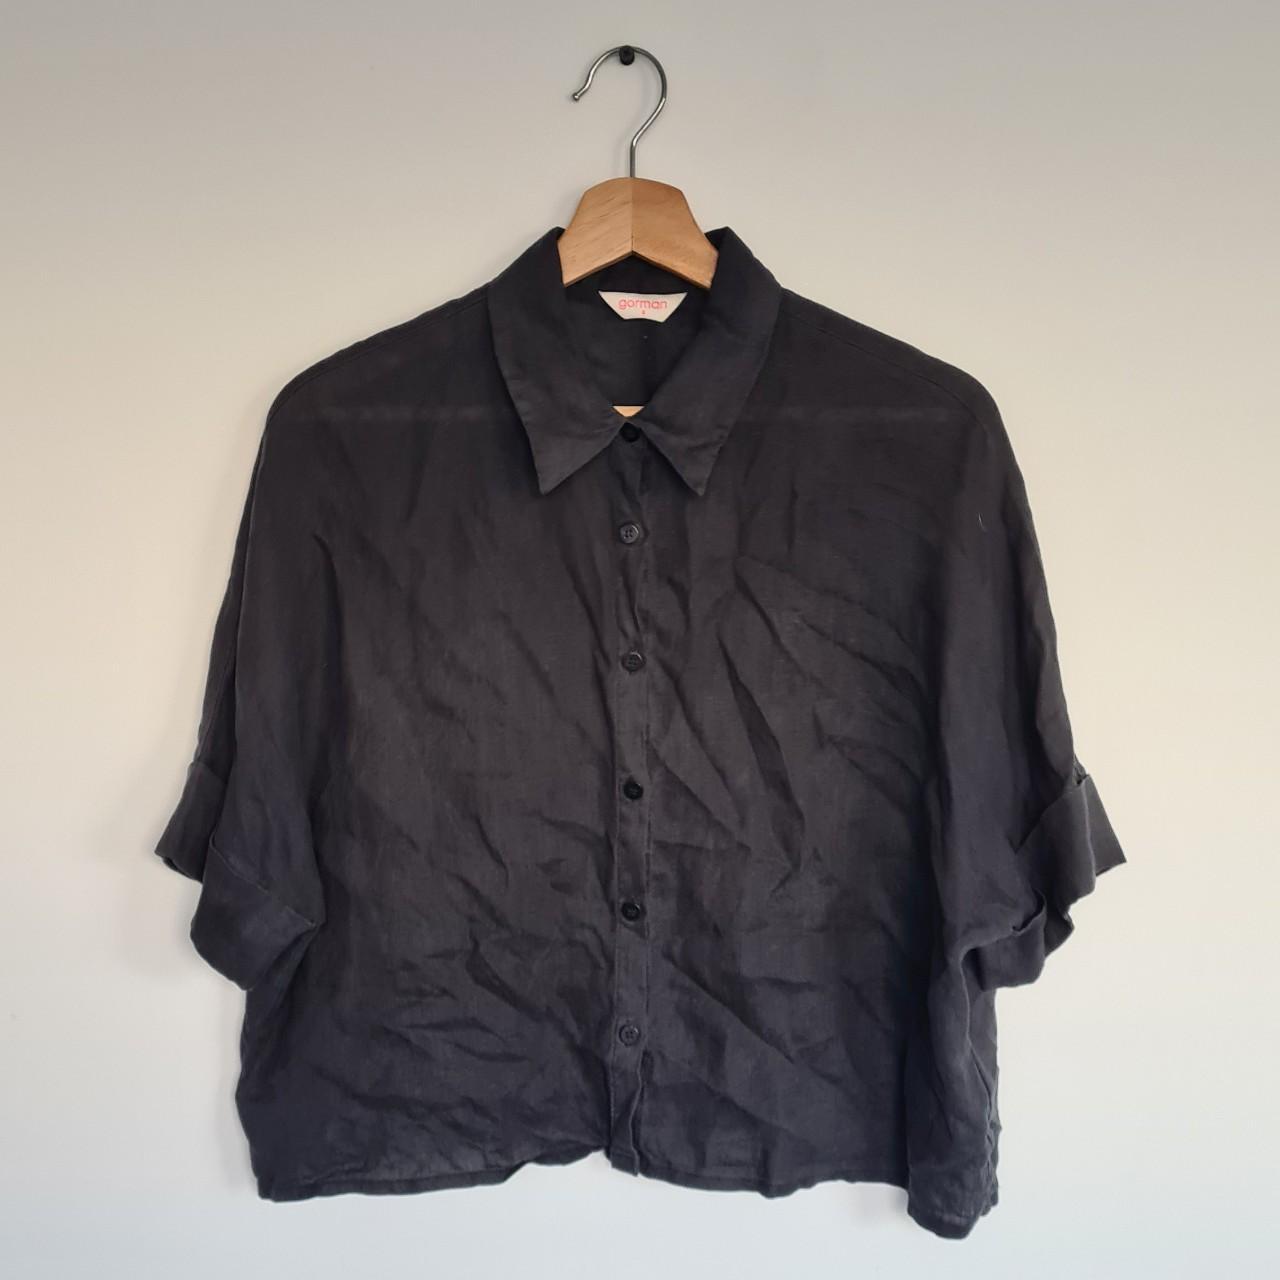 Gorman Black Collared Shirt ☆ 100% hemp ☆ Aus size... - Depop